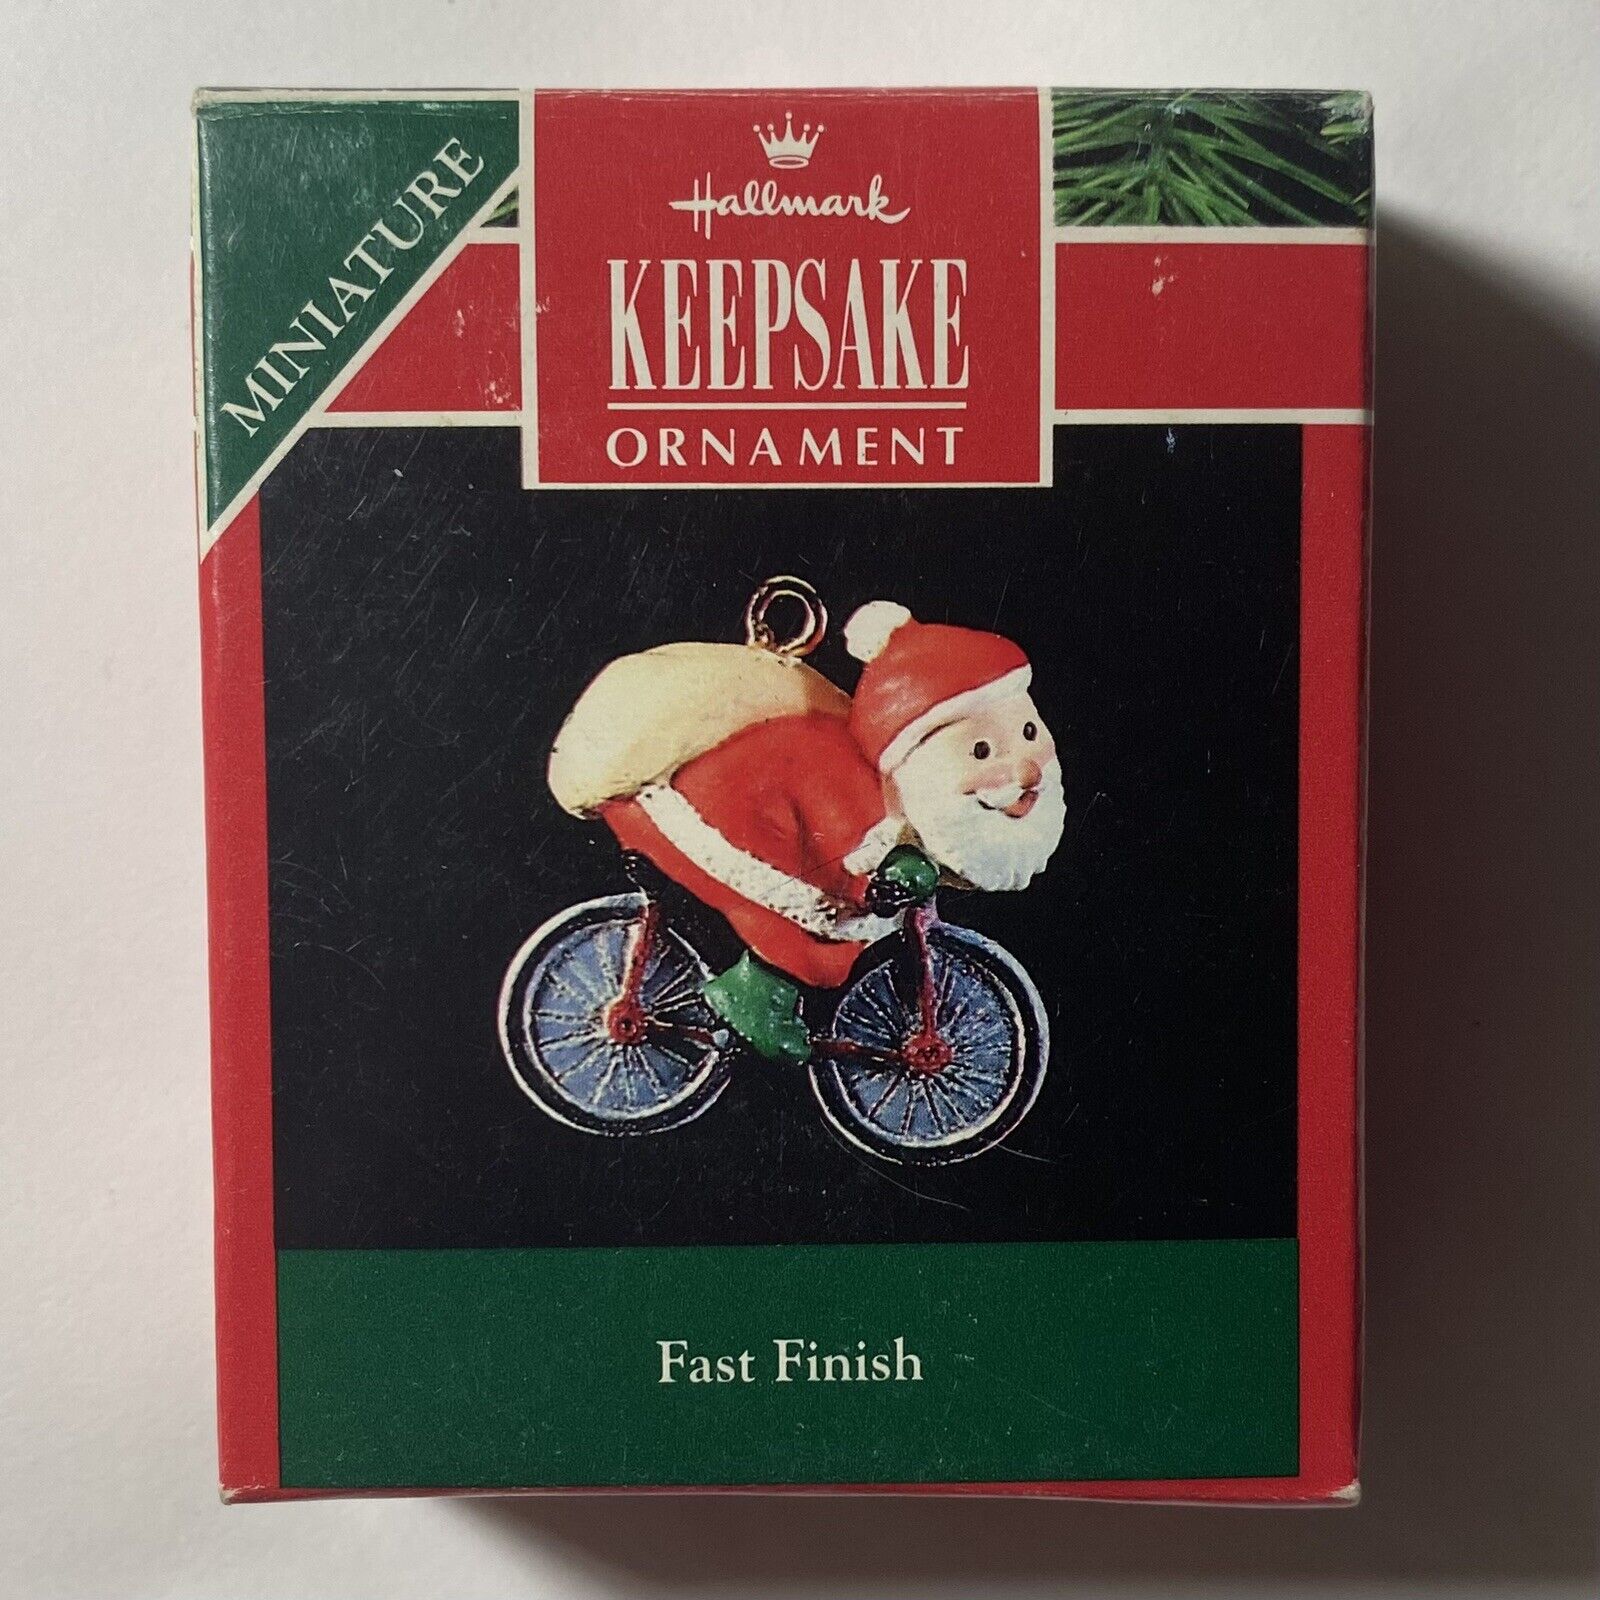 Hallmark Keepsake Ornament Miniature Santa Claus on Bicycle “Fast Finish” 1992